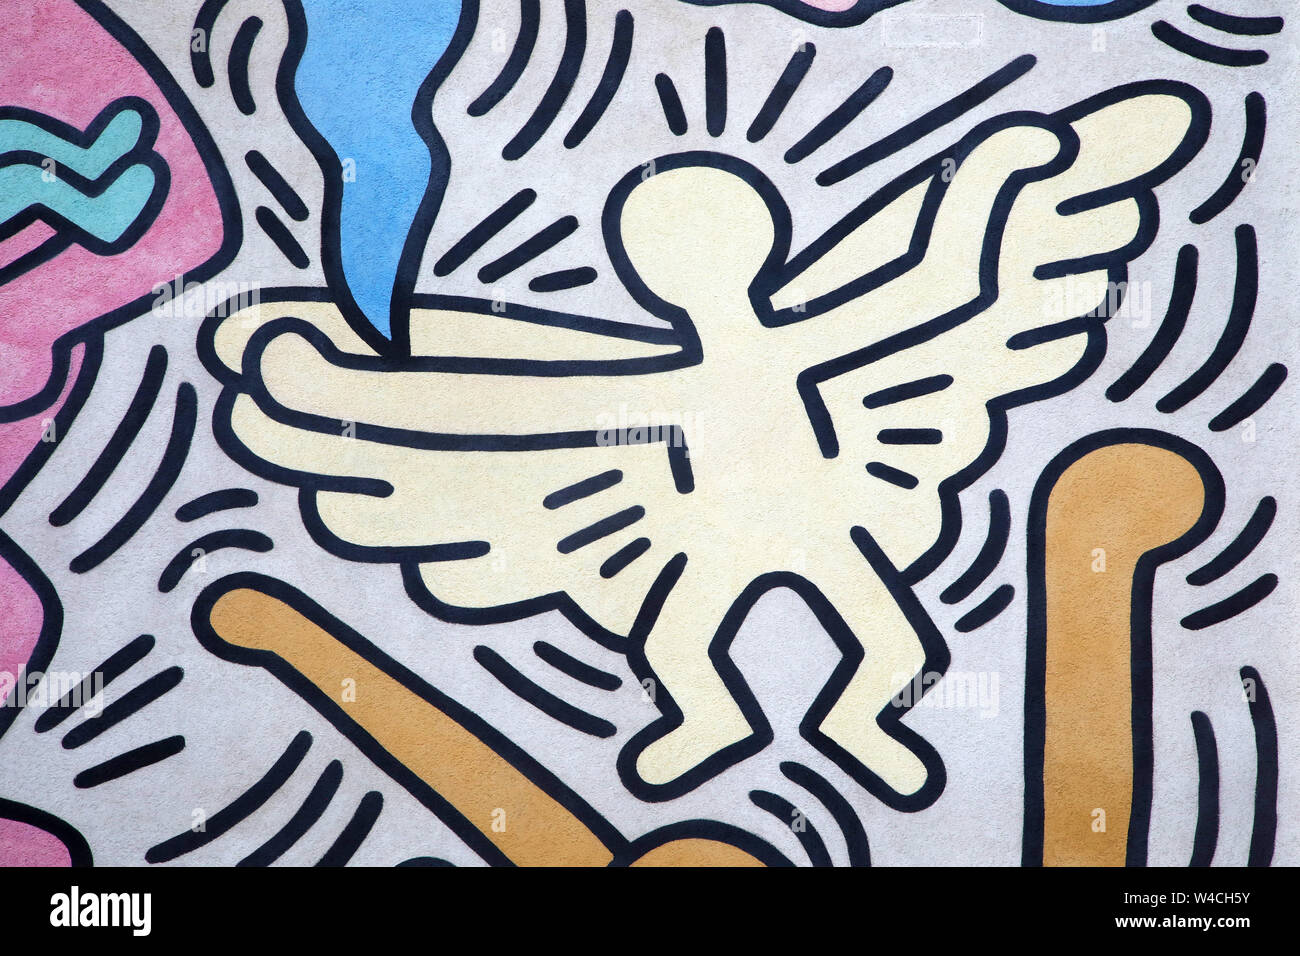 Engel von Keith Haring gemalt. Aus einer riesigen außenpool Artwork (Tuttomondo genannt) in Pisa, Italien, im Jahr 1989 gemalt. Stockfoto